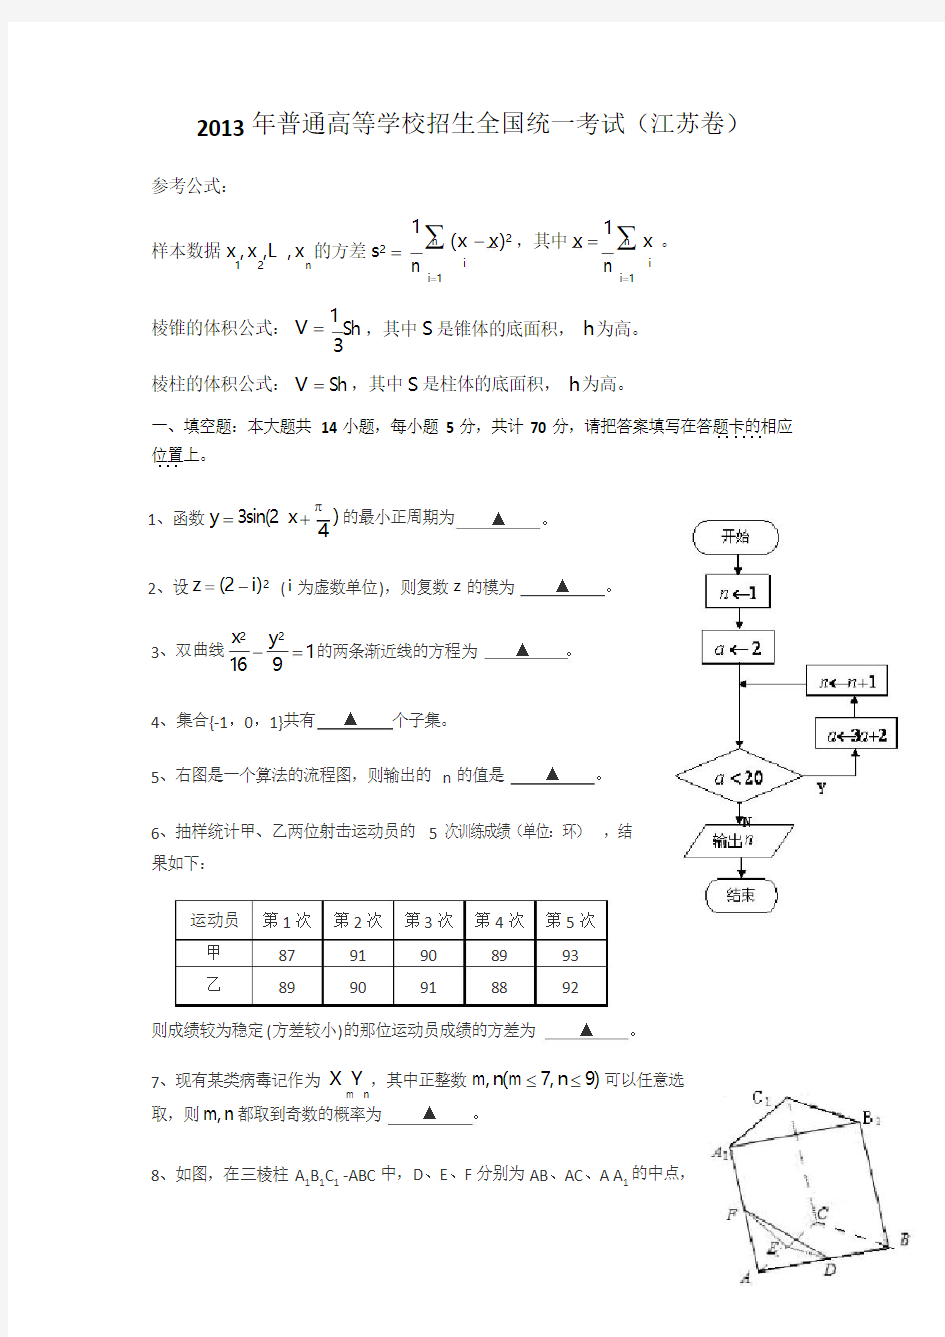 2013年江苏高考数学试题和答案(含理科附加)